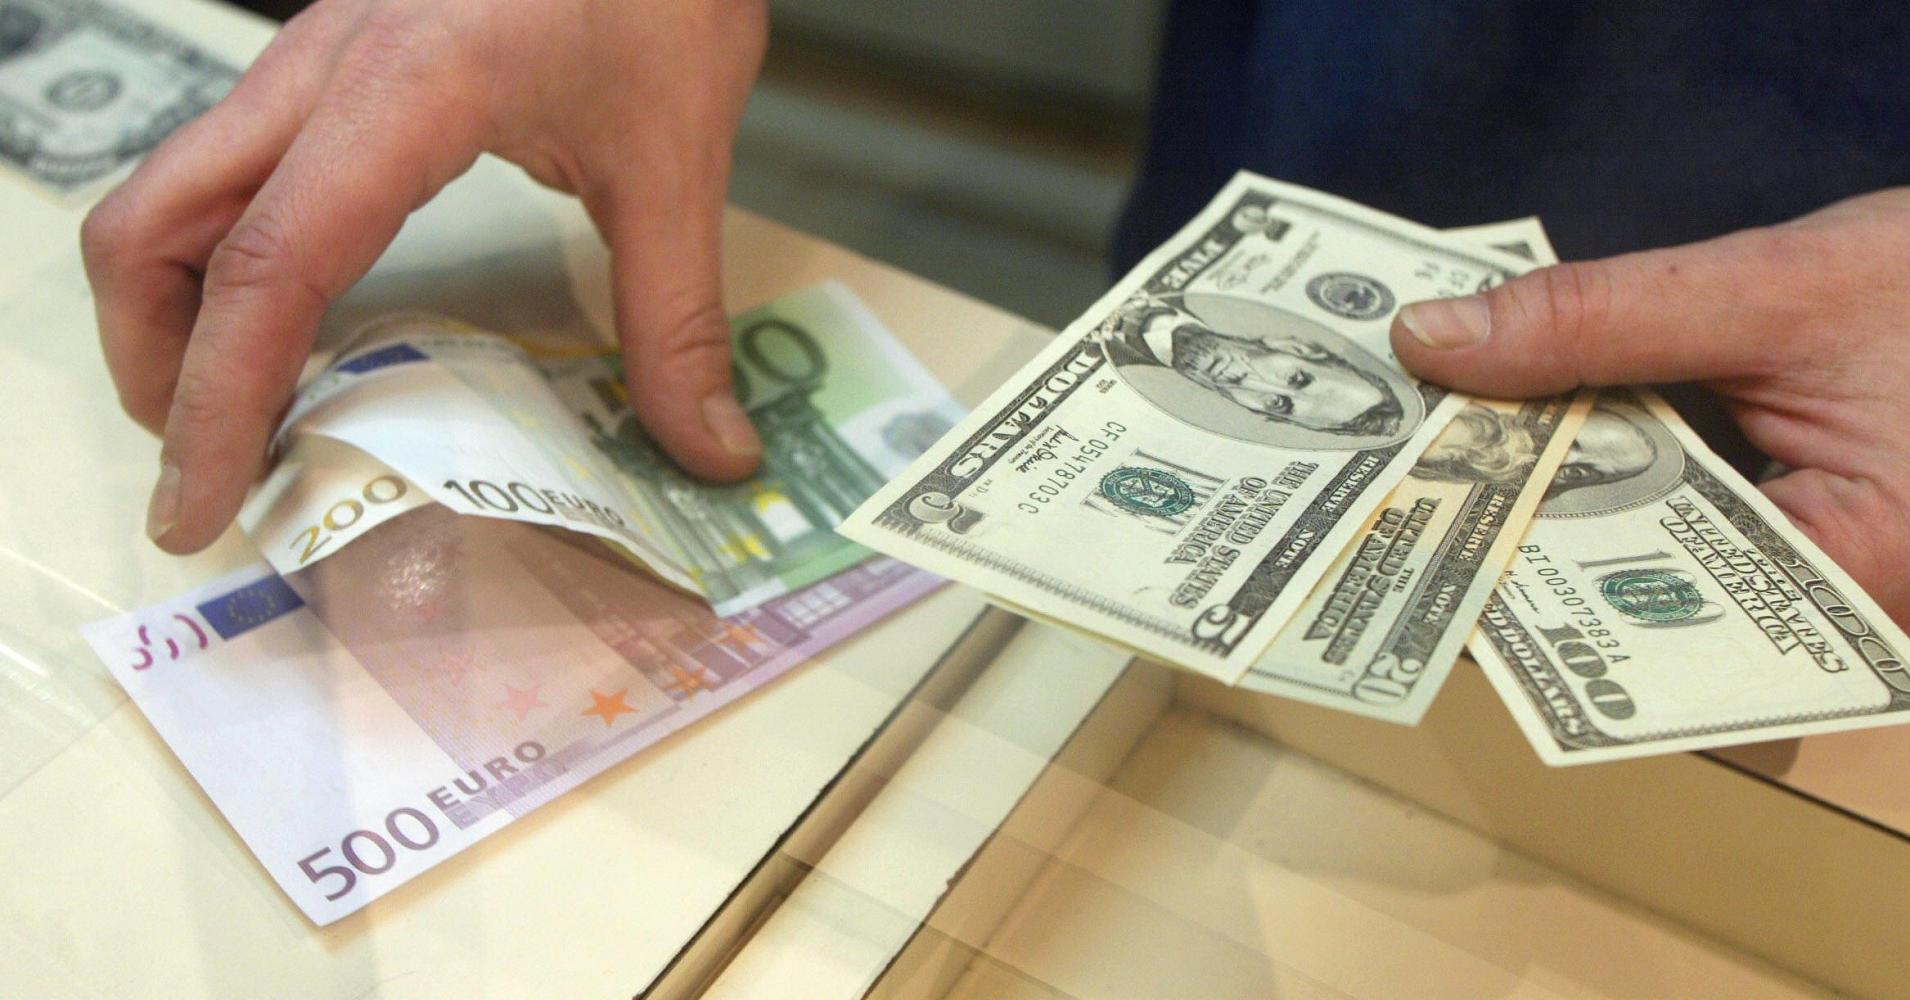 قیمت دلار و یورو در بازار امروز دوشنبه ۱۷ شهریور ۹۹/کاهش نرخ رسمی یورو و پوند